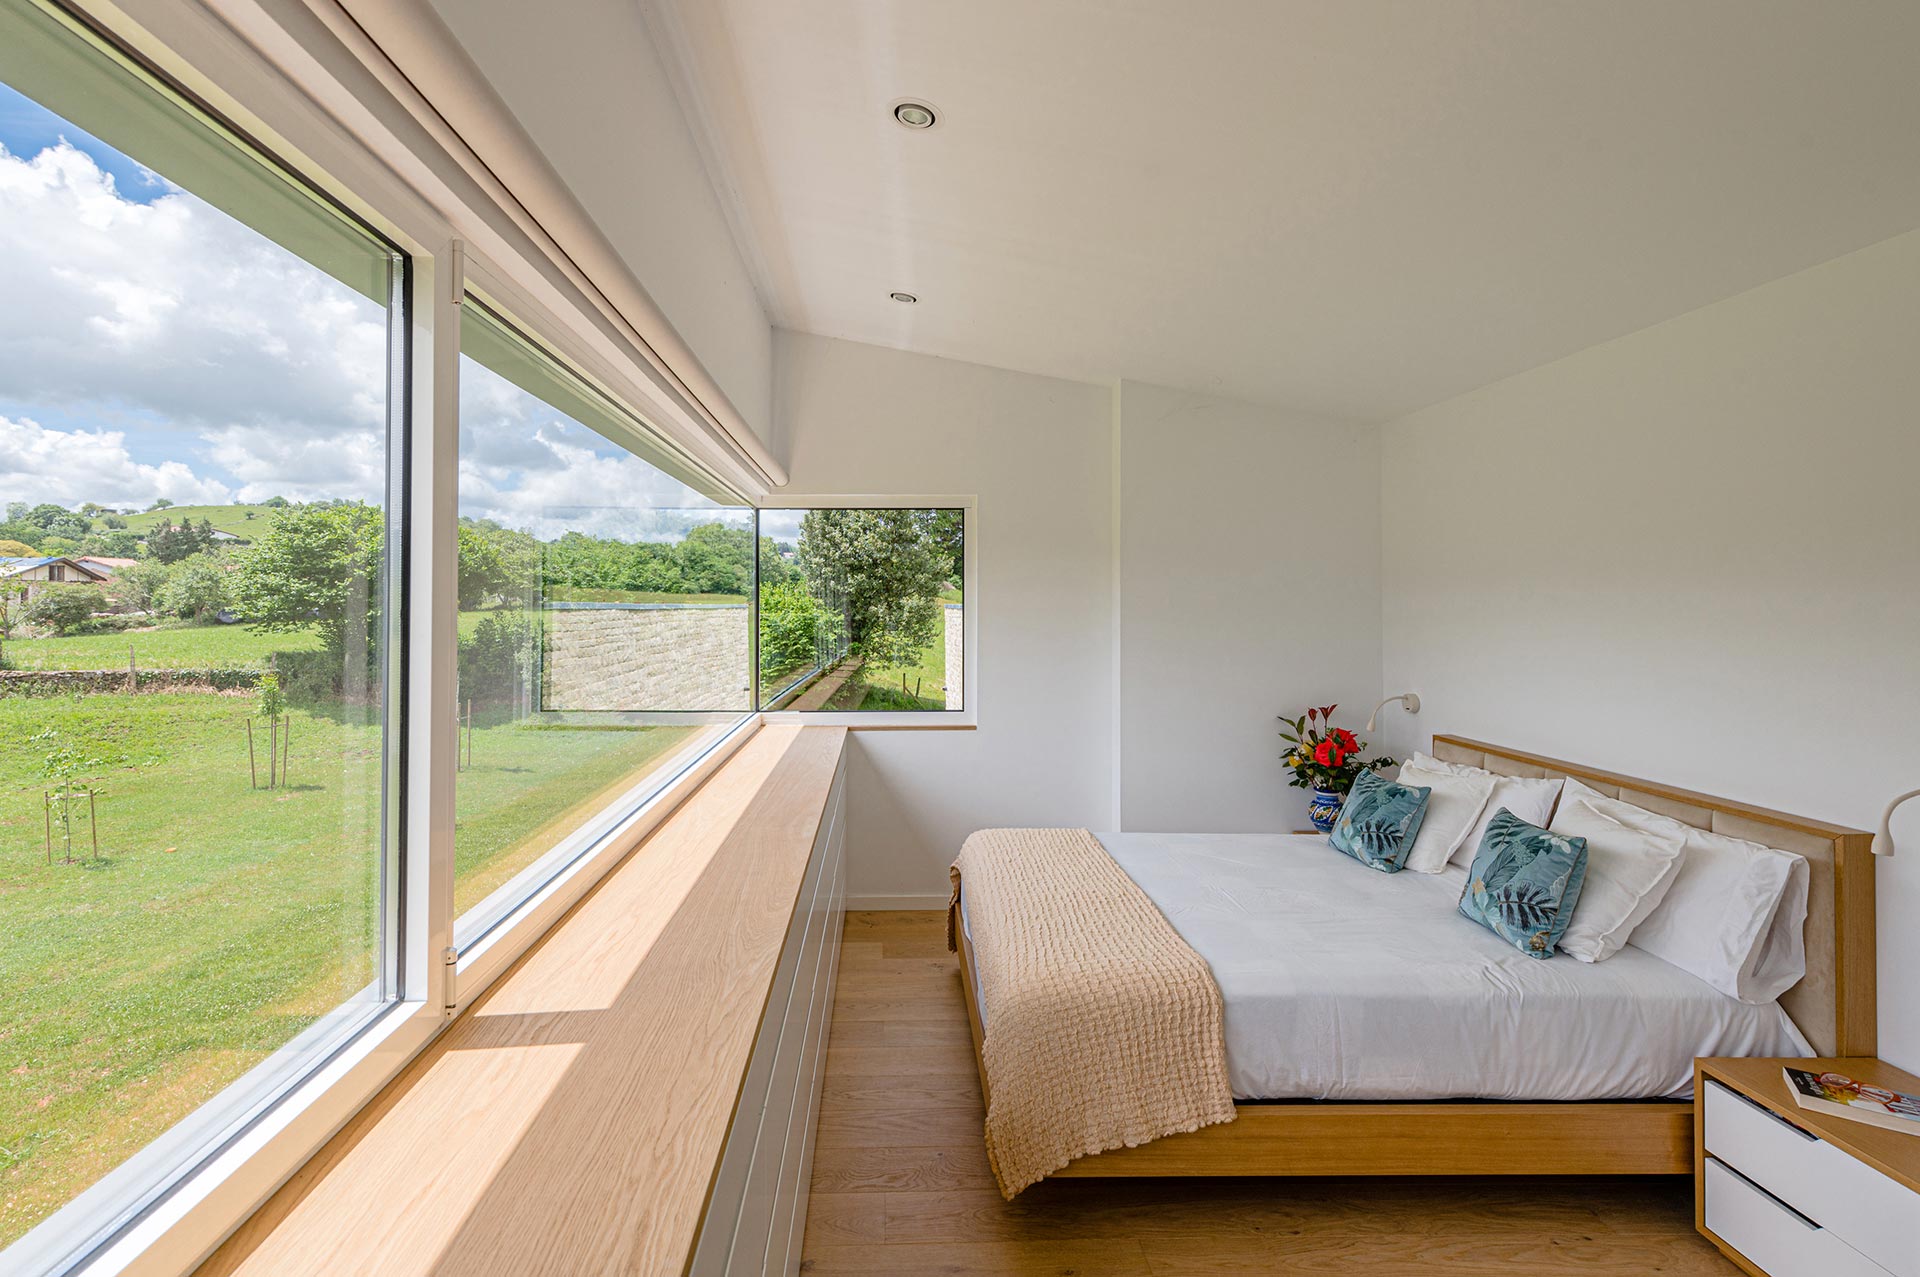 Dormitorio con acabados de madera en casa moderna minimalista diseñada por Moah Arquitectos en Pámanes